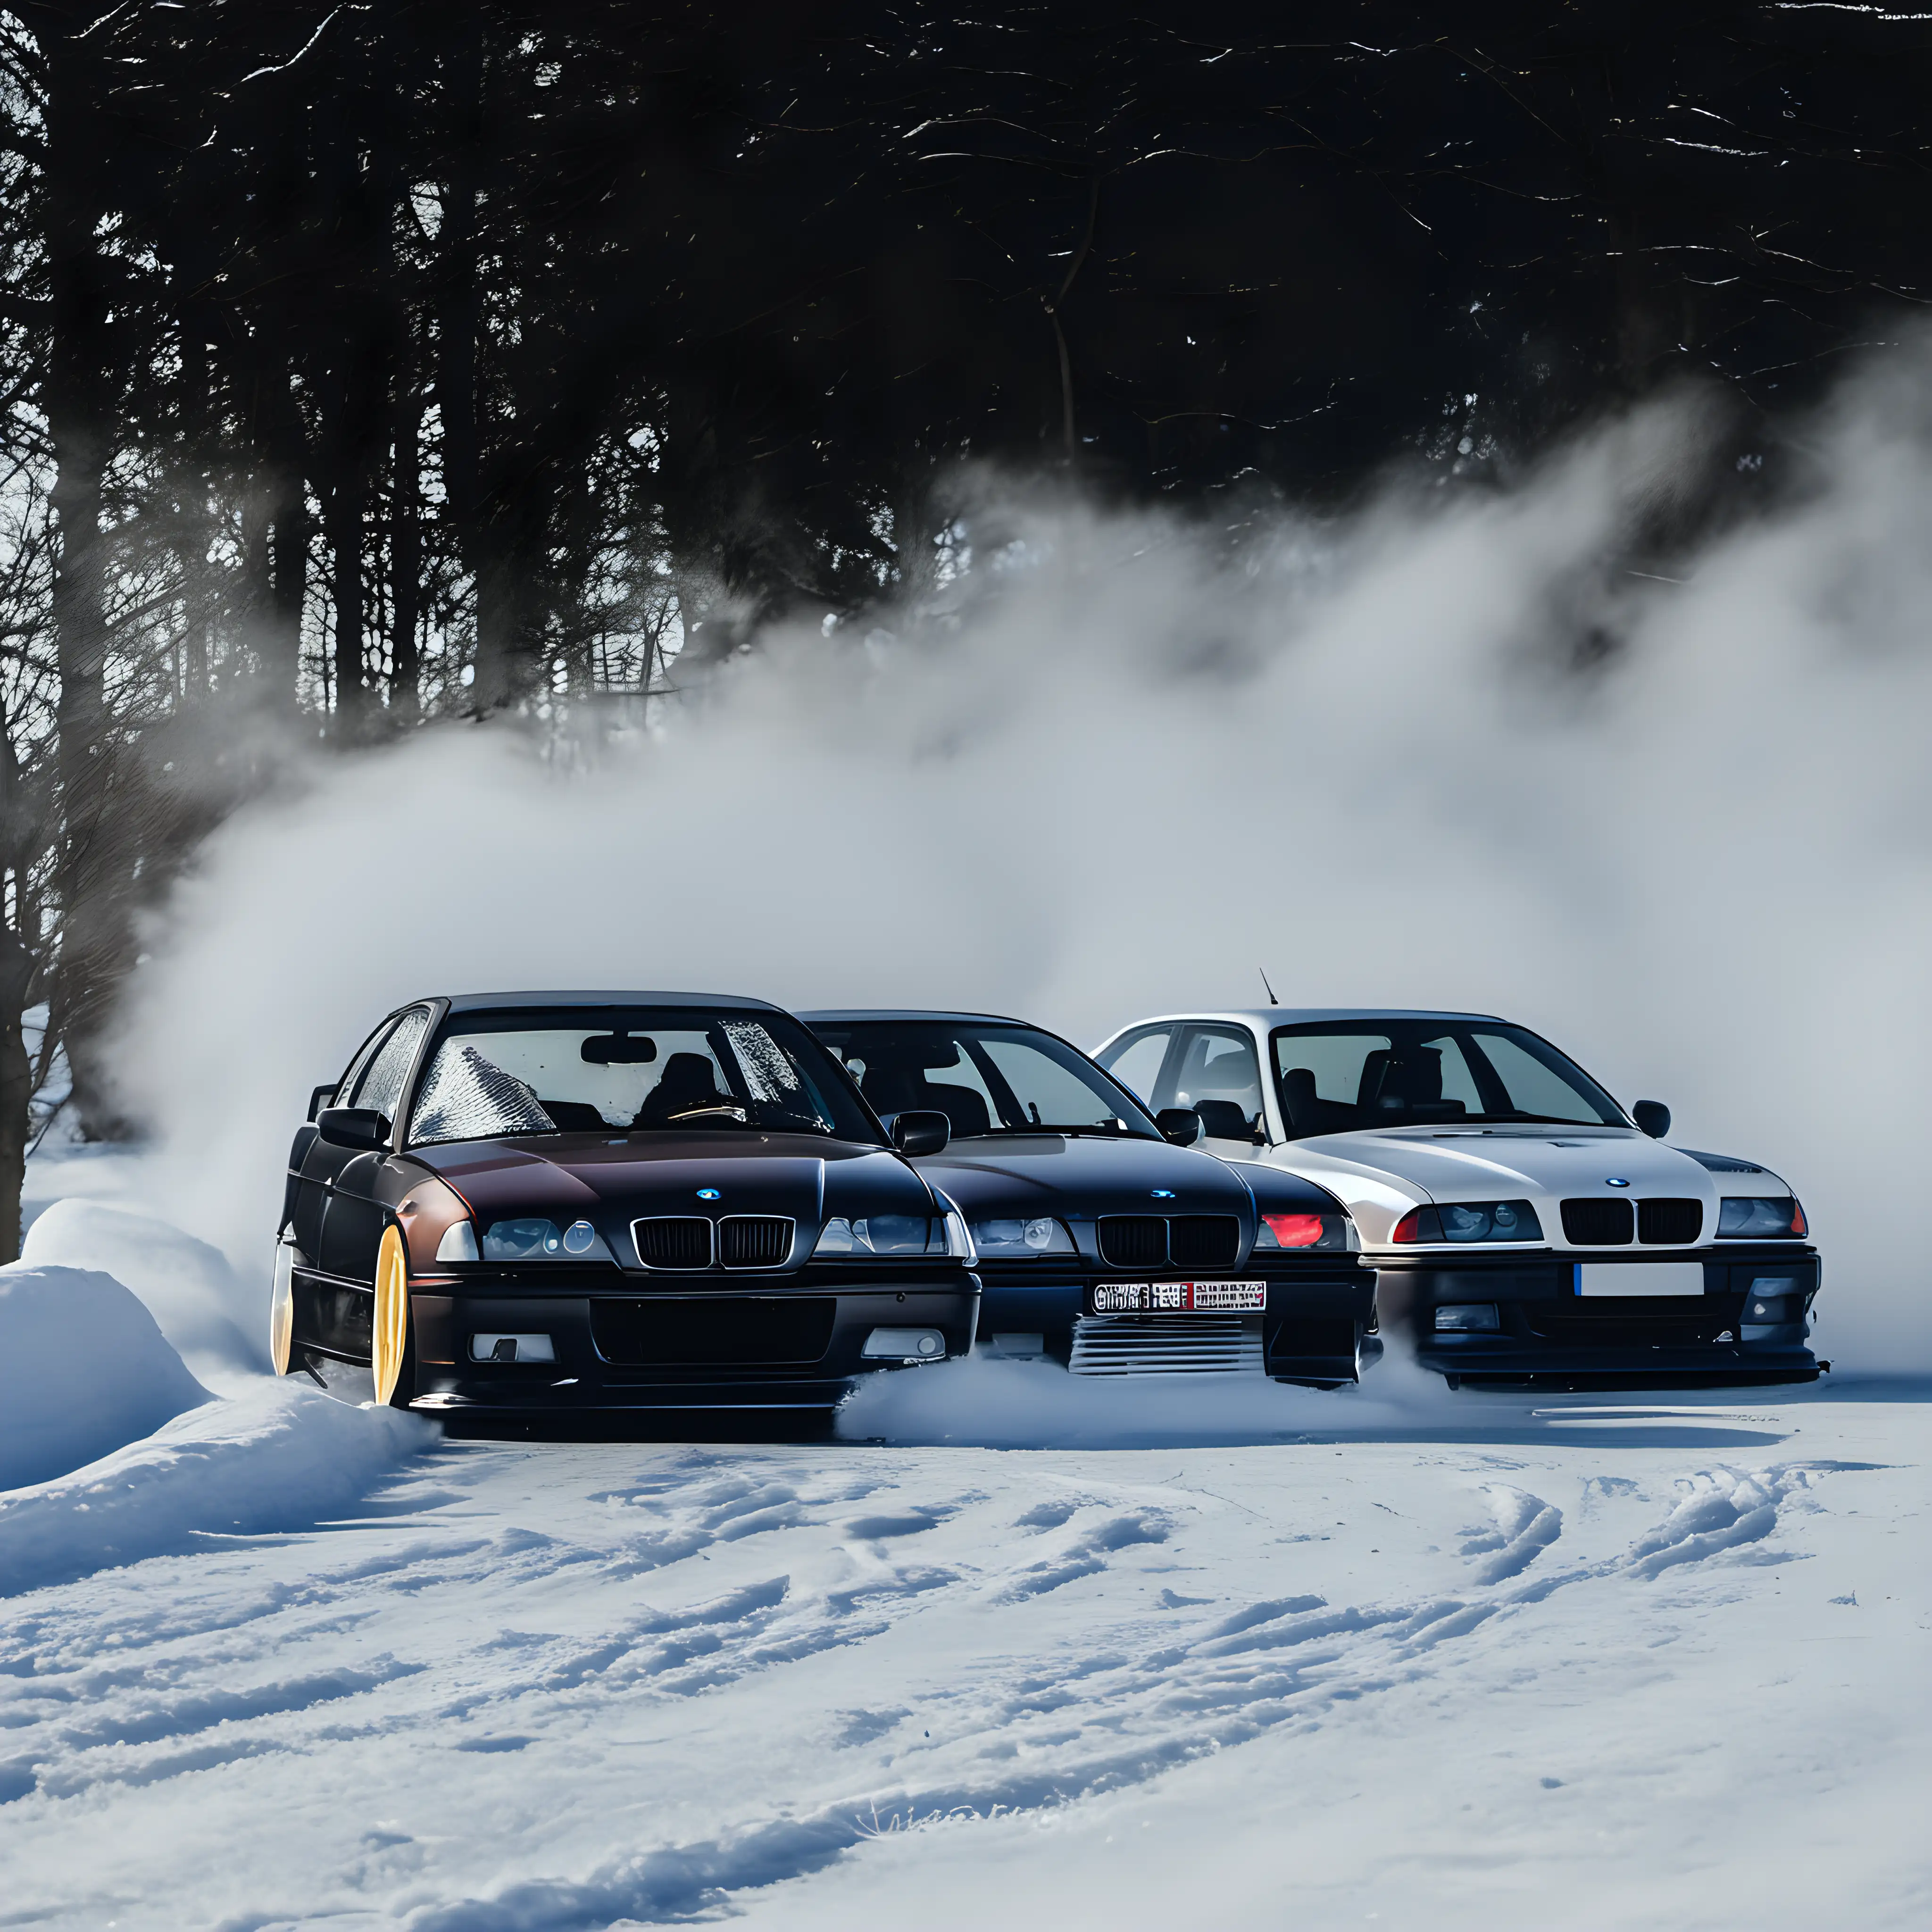 BMW E36 Snow Drift Thrilling Winter Car Maneuvers